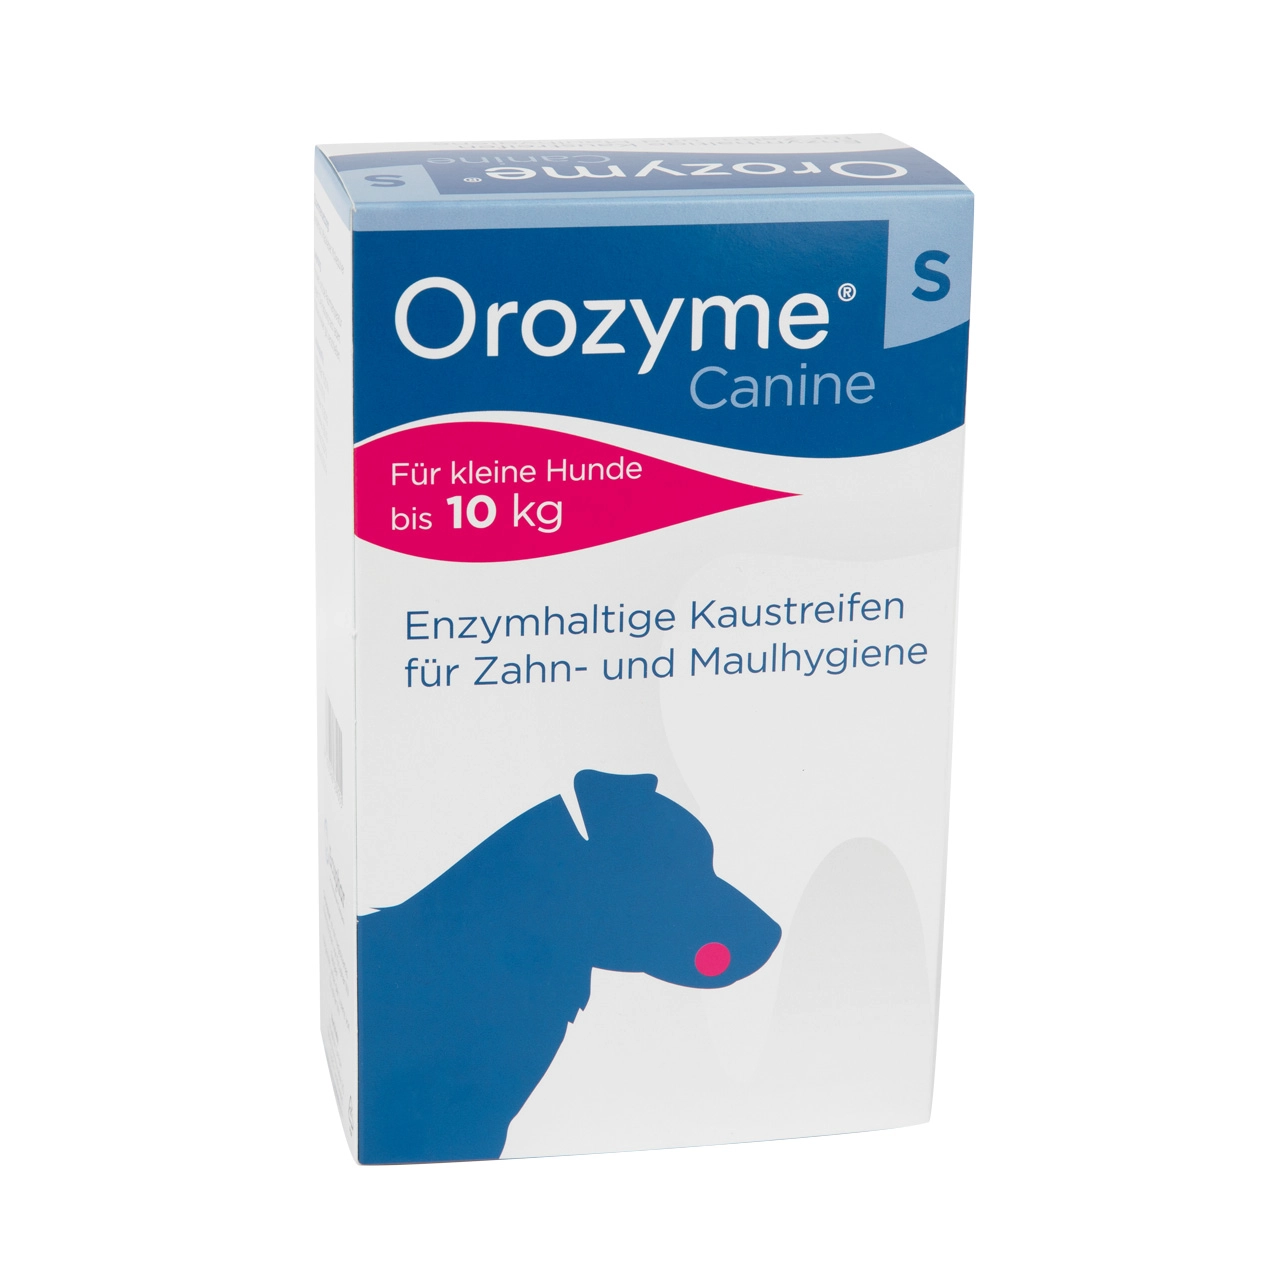 Orozyme Canine - Strisce da masticare per la cura dei denti